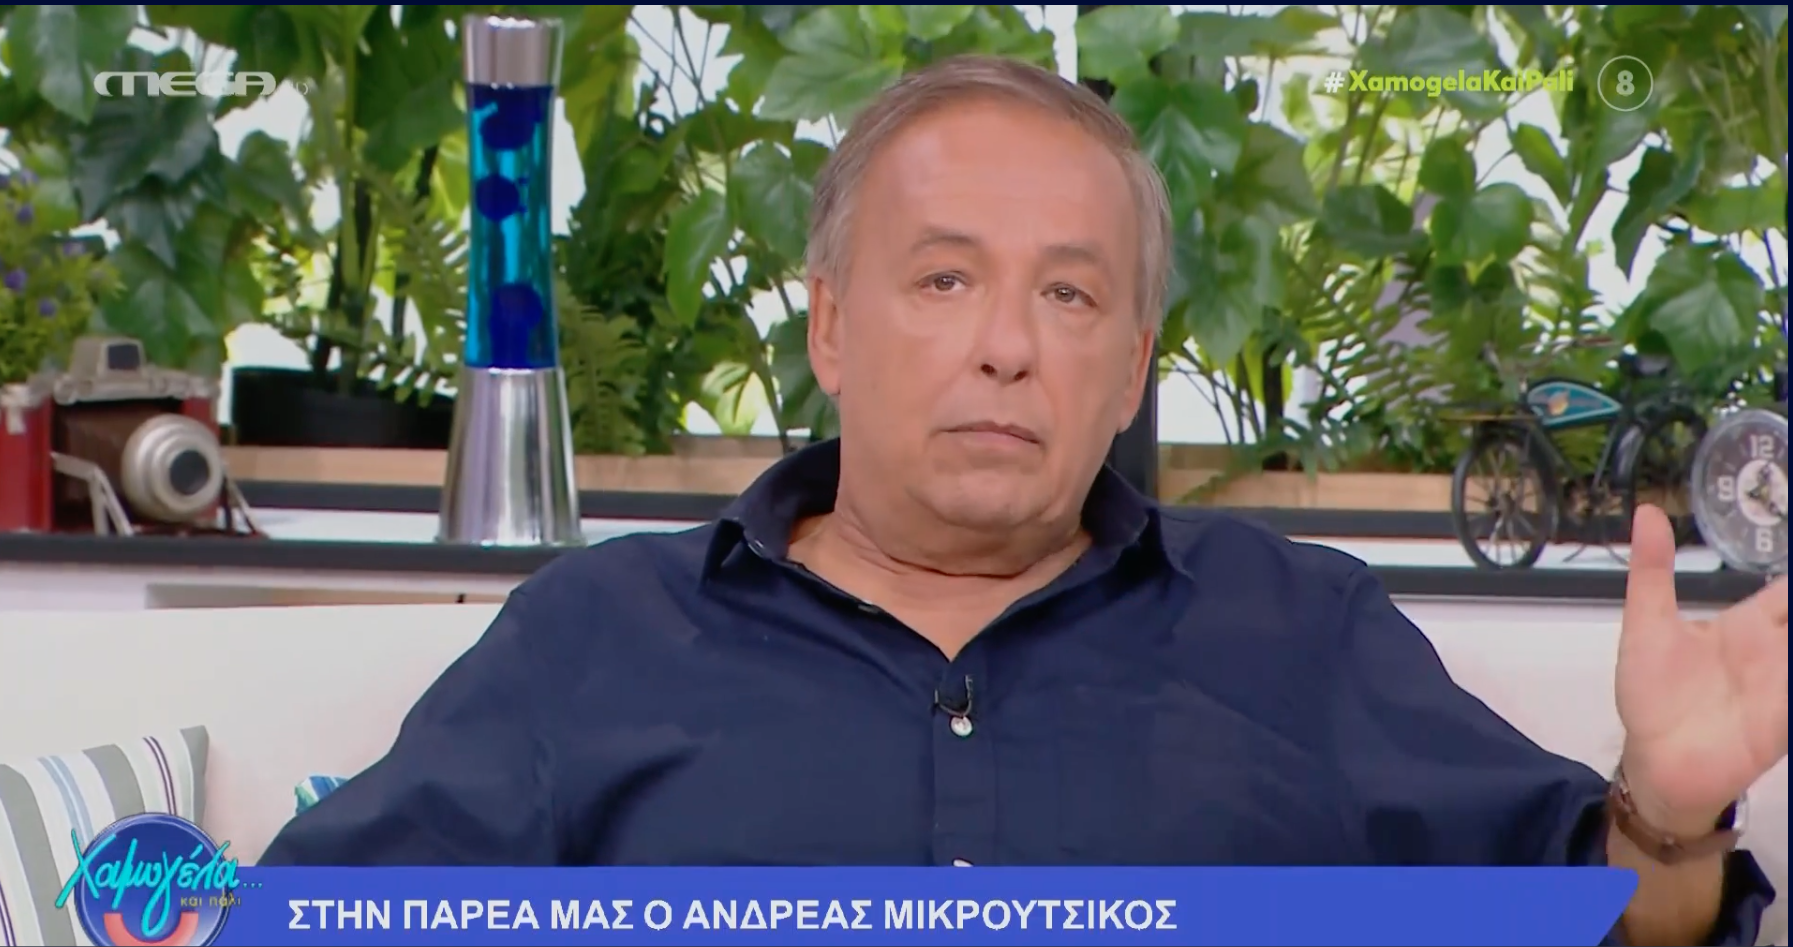 Ανδρέας Μικρούτσικος: «Η τηλεόραση είναι ρουφήχτρα, ρουφάει τα πάντα, σε τρώει κανονικά και με το νόμο» (VIDEO)